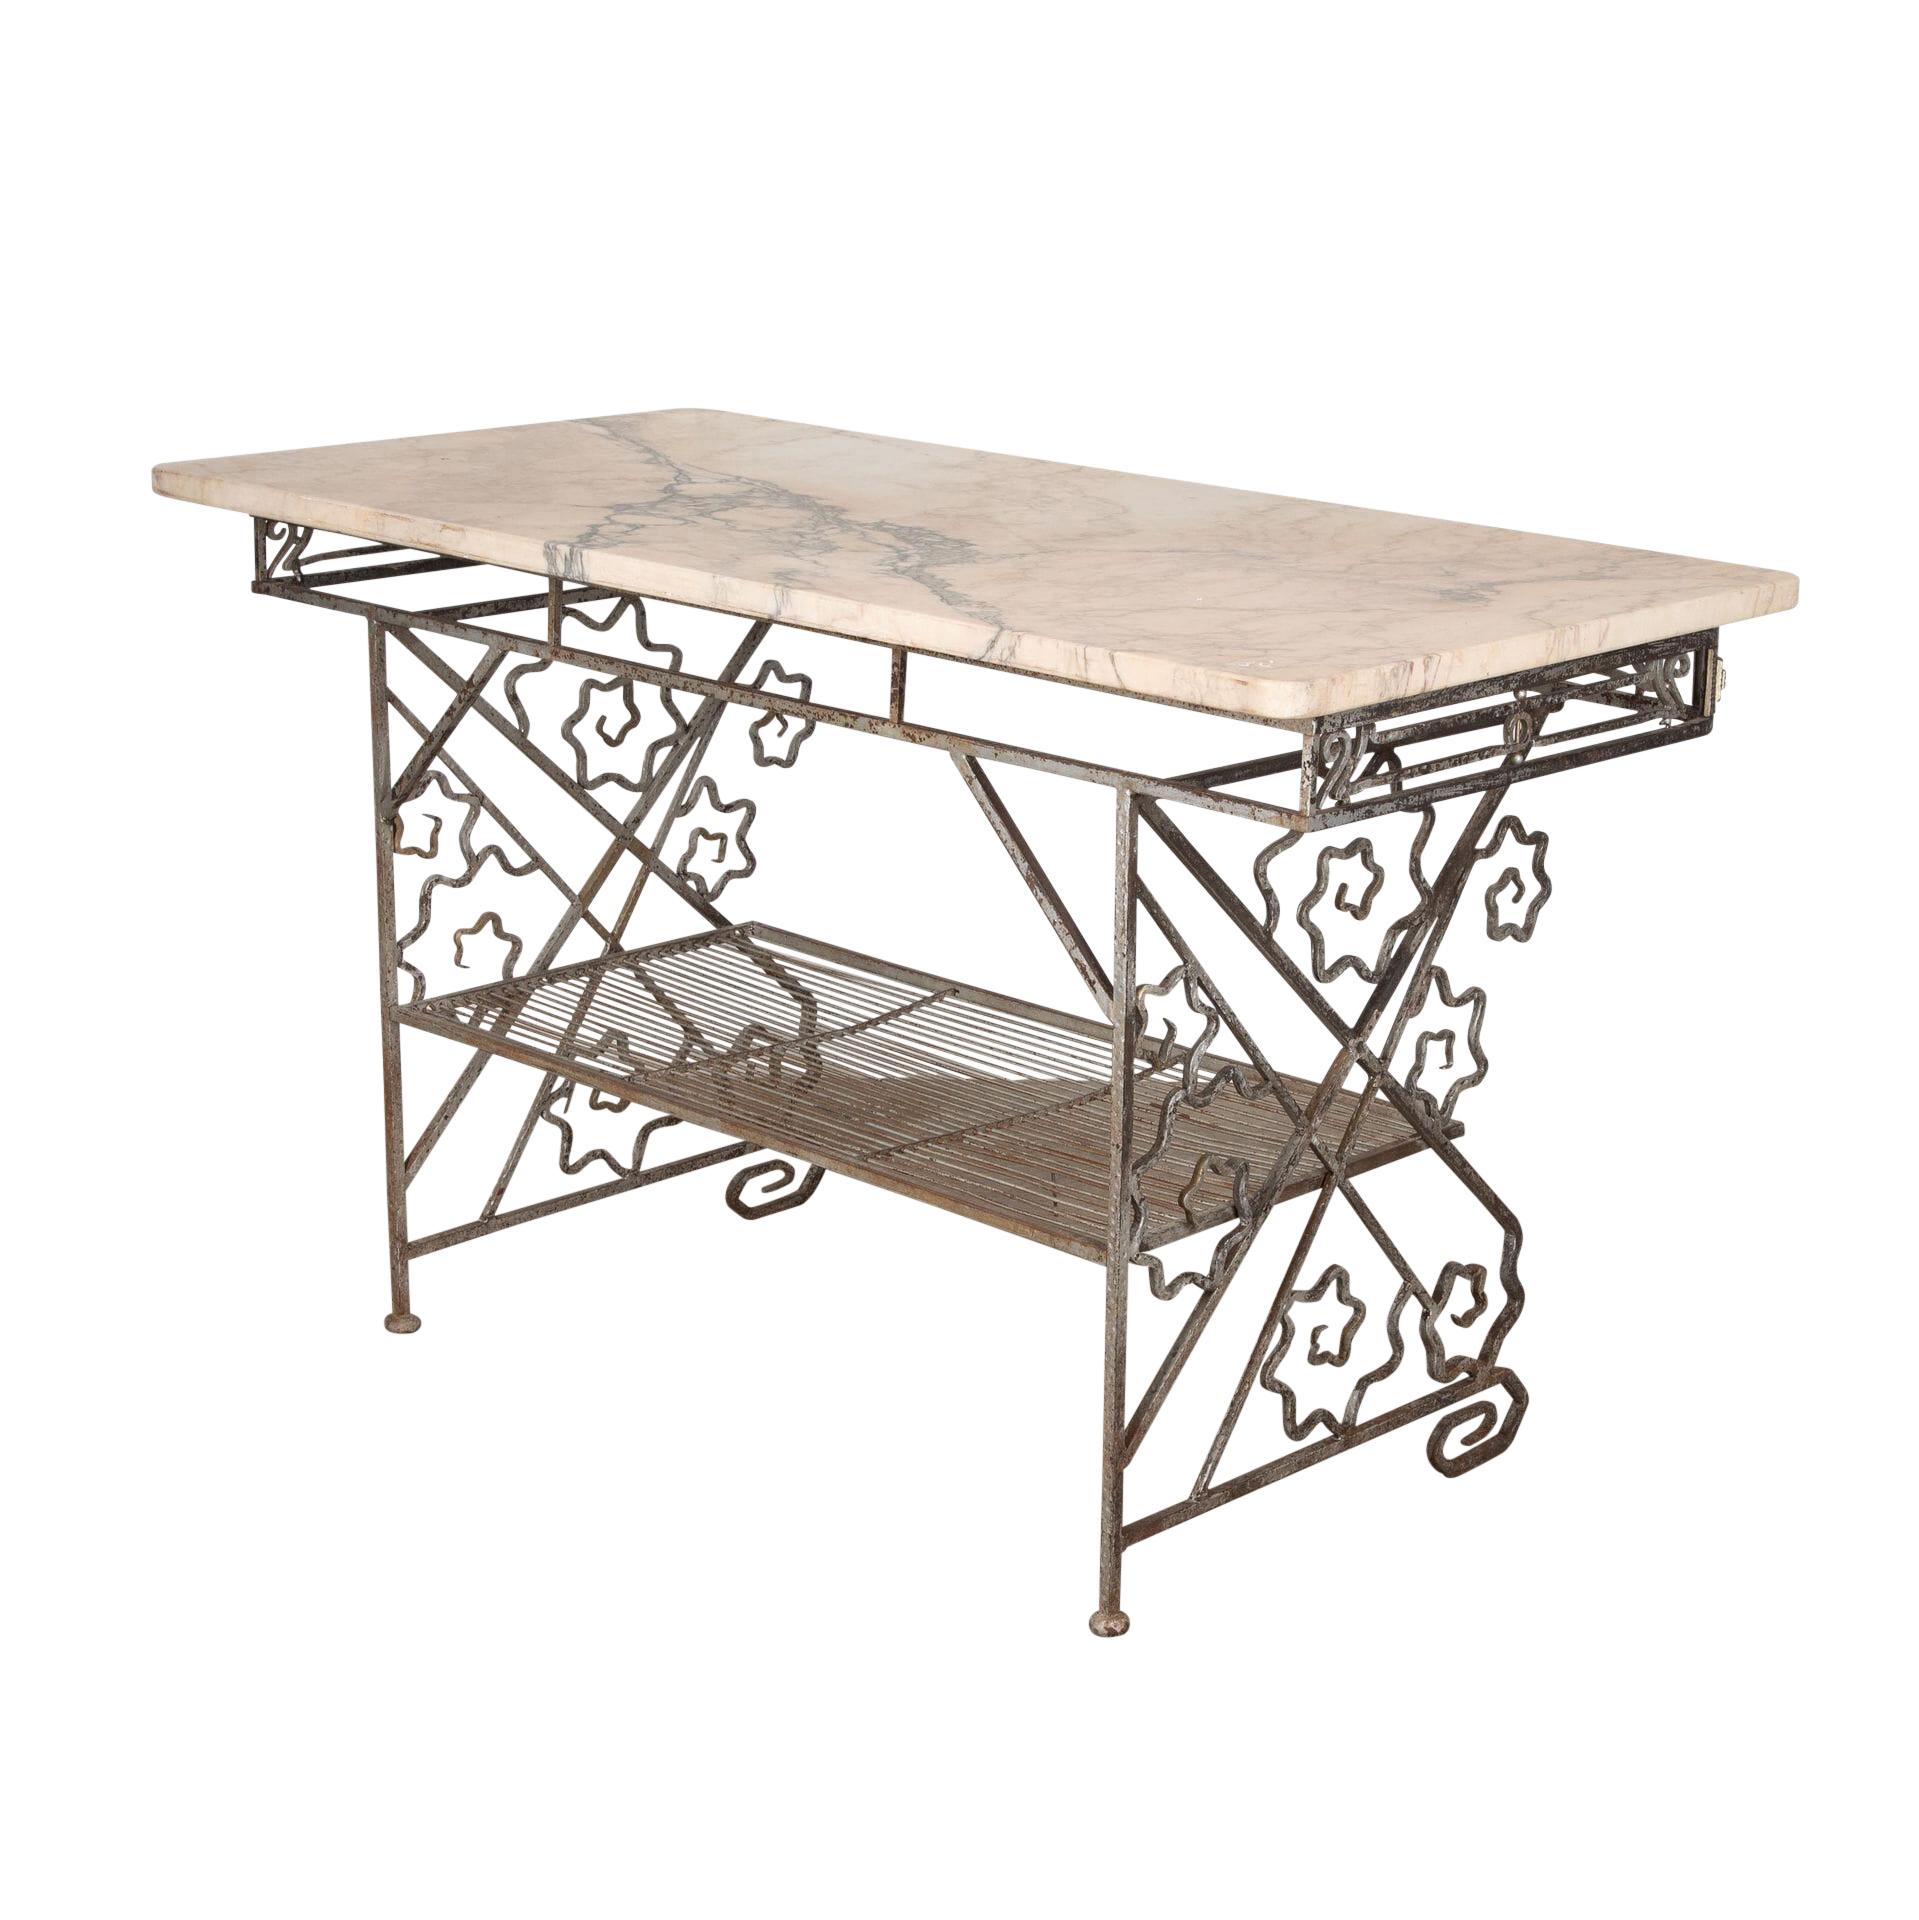 Bäckertisch aus den 1940er Jahren mit dekorativem Eisendesign am Rahmen.
Große originale Marmorplatte.
Hervorragend geeignet als freistehende Kücheninsel, Verkaufsdisplay oder Konsole.